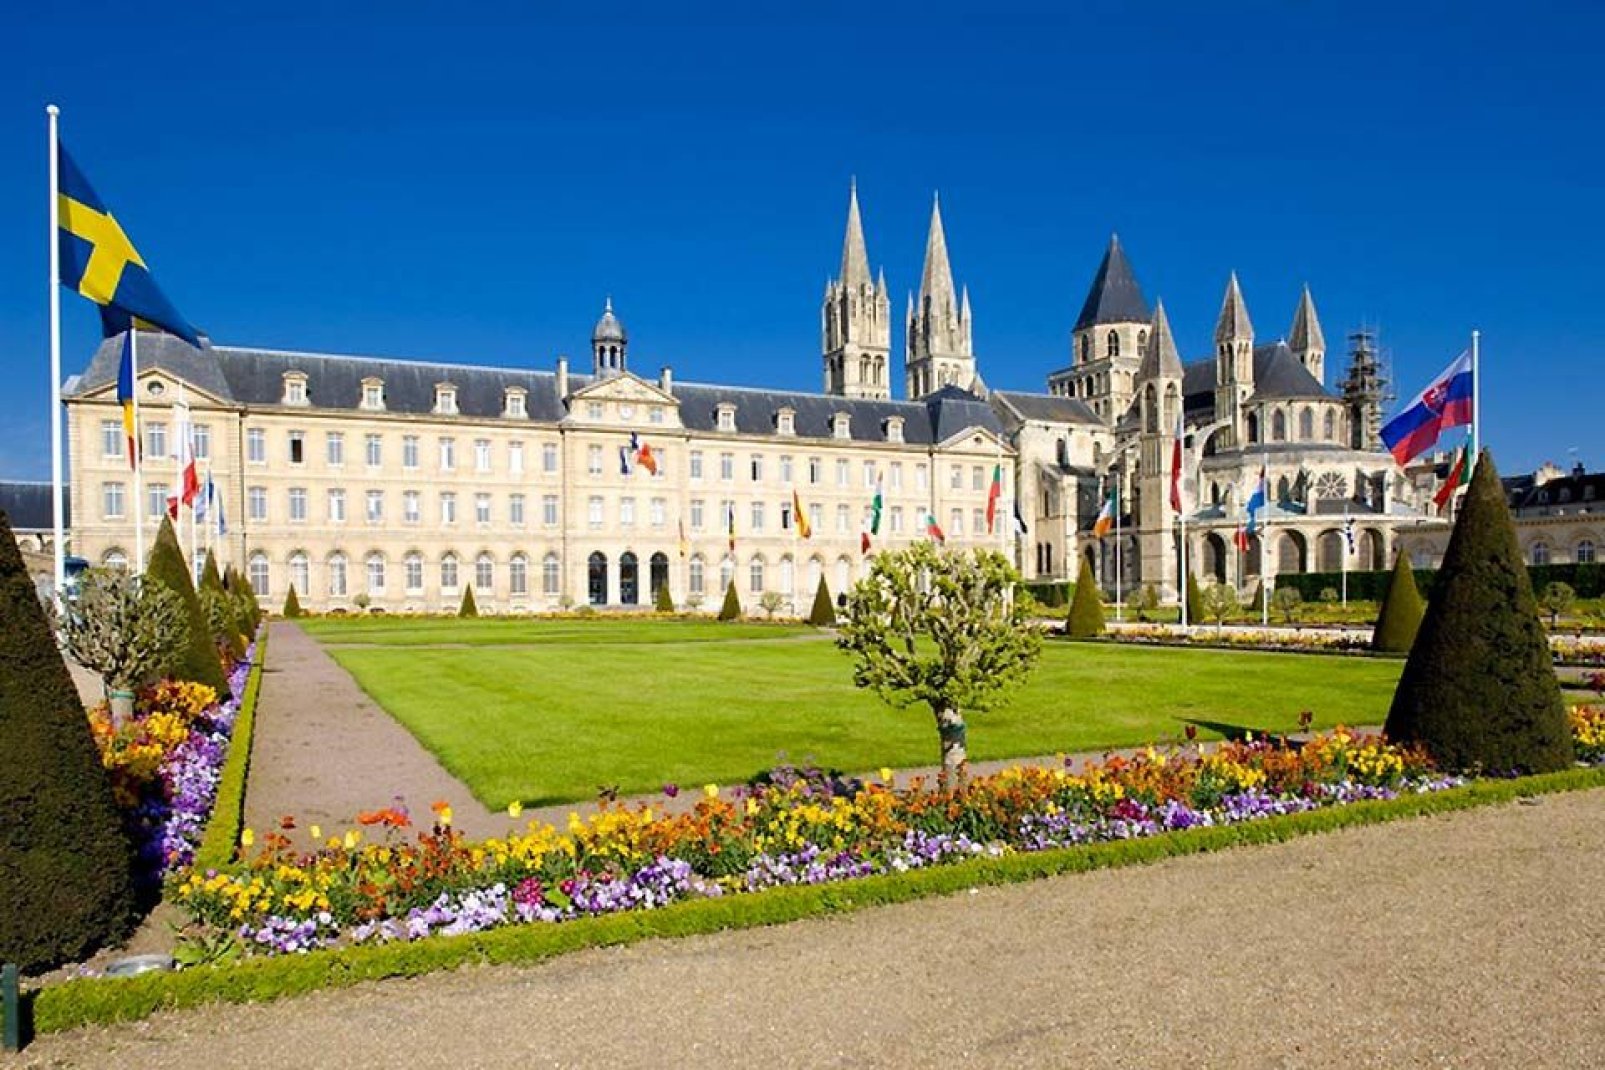 Im ehemaligen Benediktinerkloster St-Étienne de Caen befindet sich seit 1965 das Rathaus der Stadt. Es wurde im Jahre 1059 von William dem Eroberer und seiner Frau als Buße für ihre Sünden gestiftet.